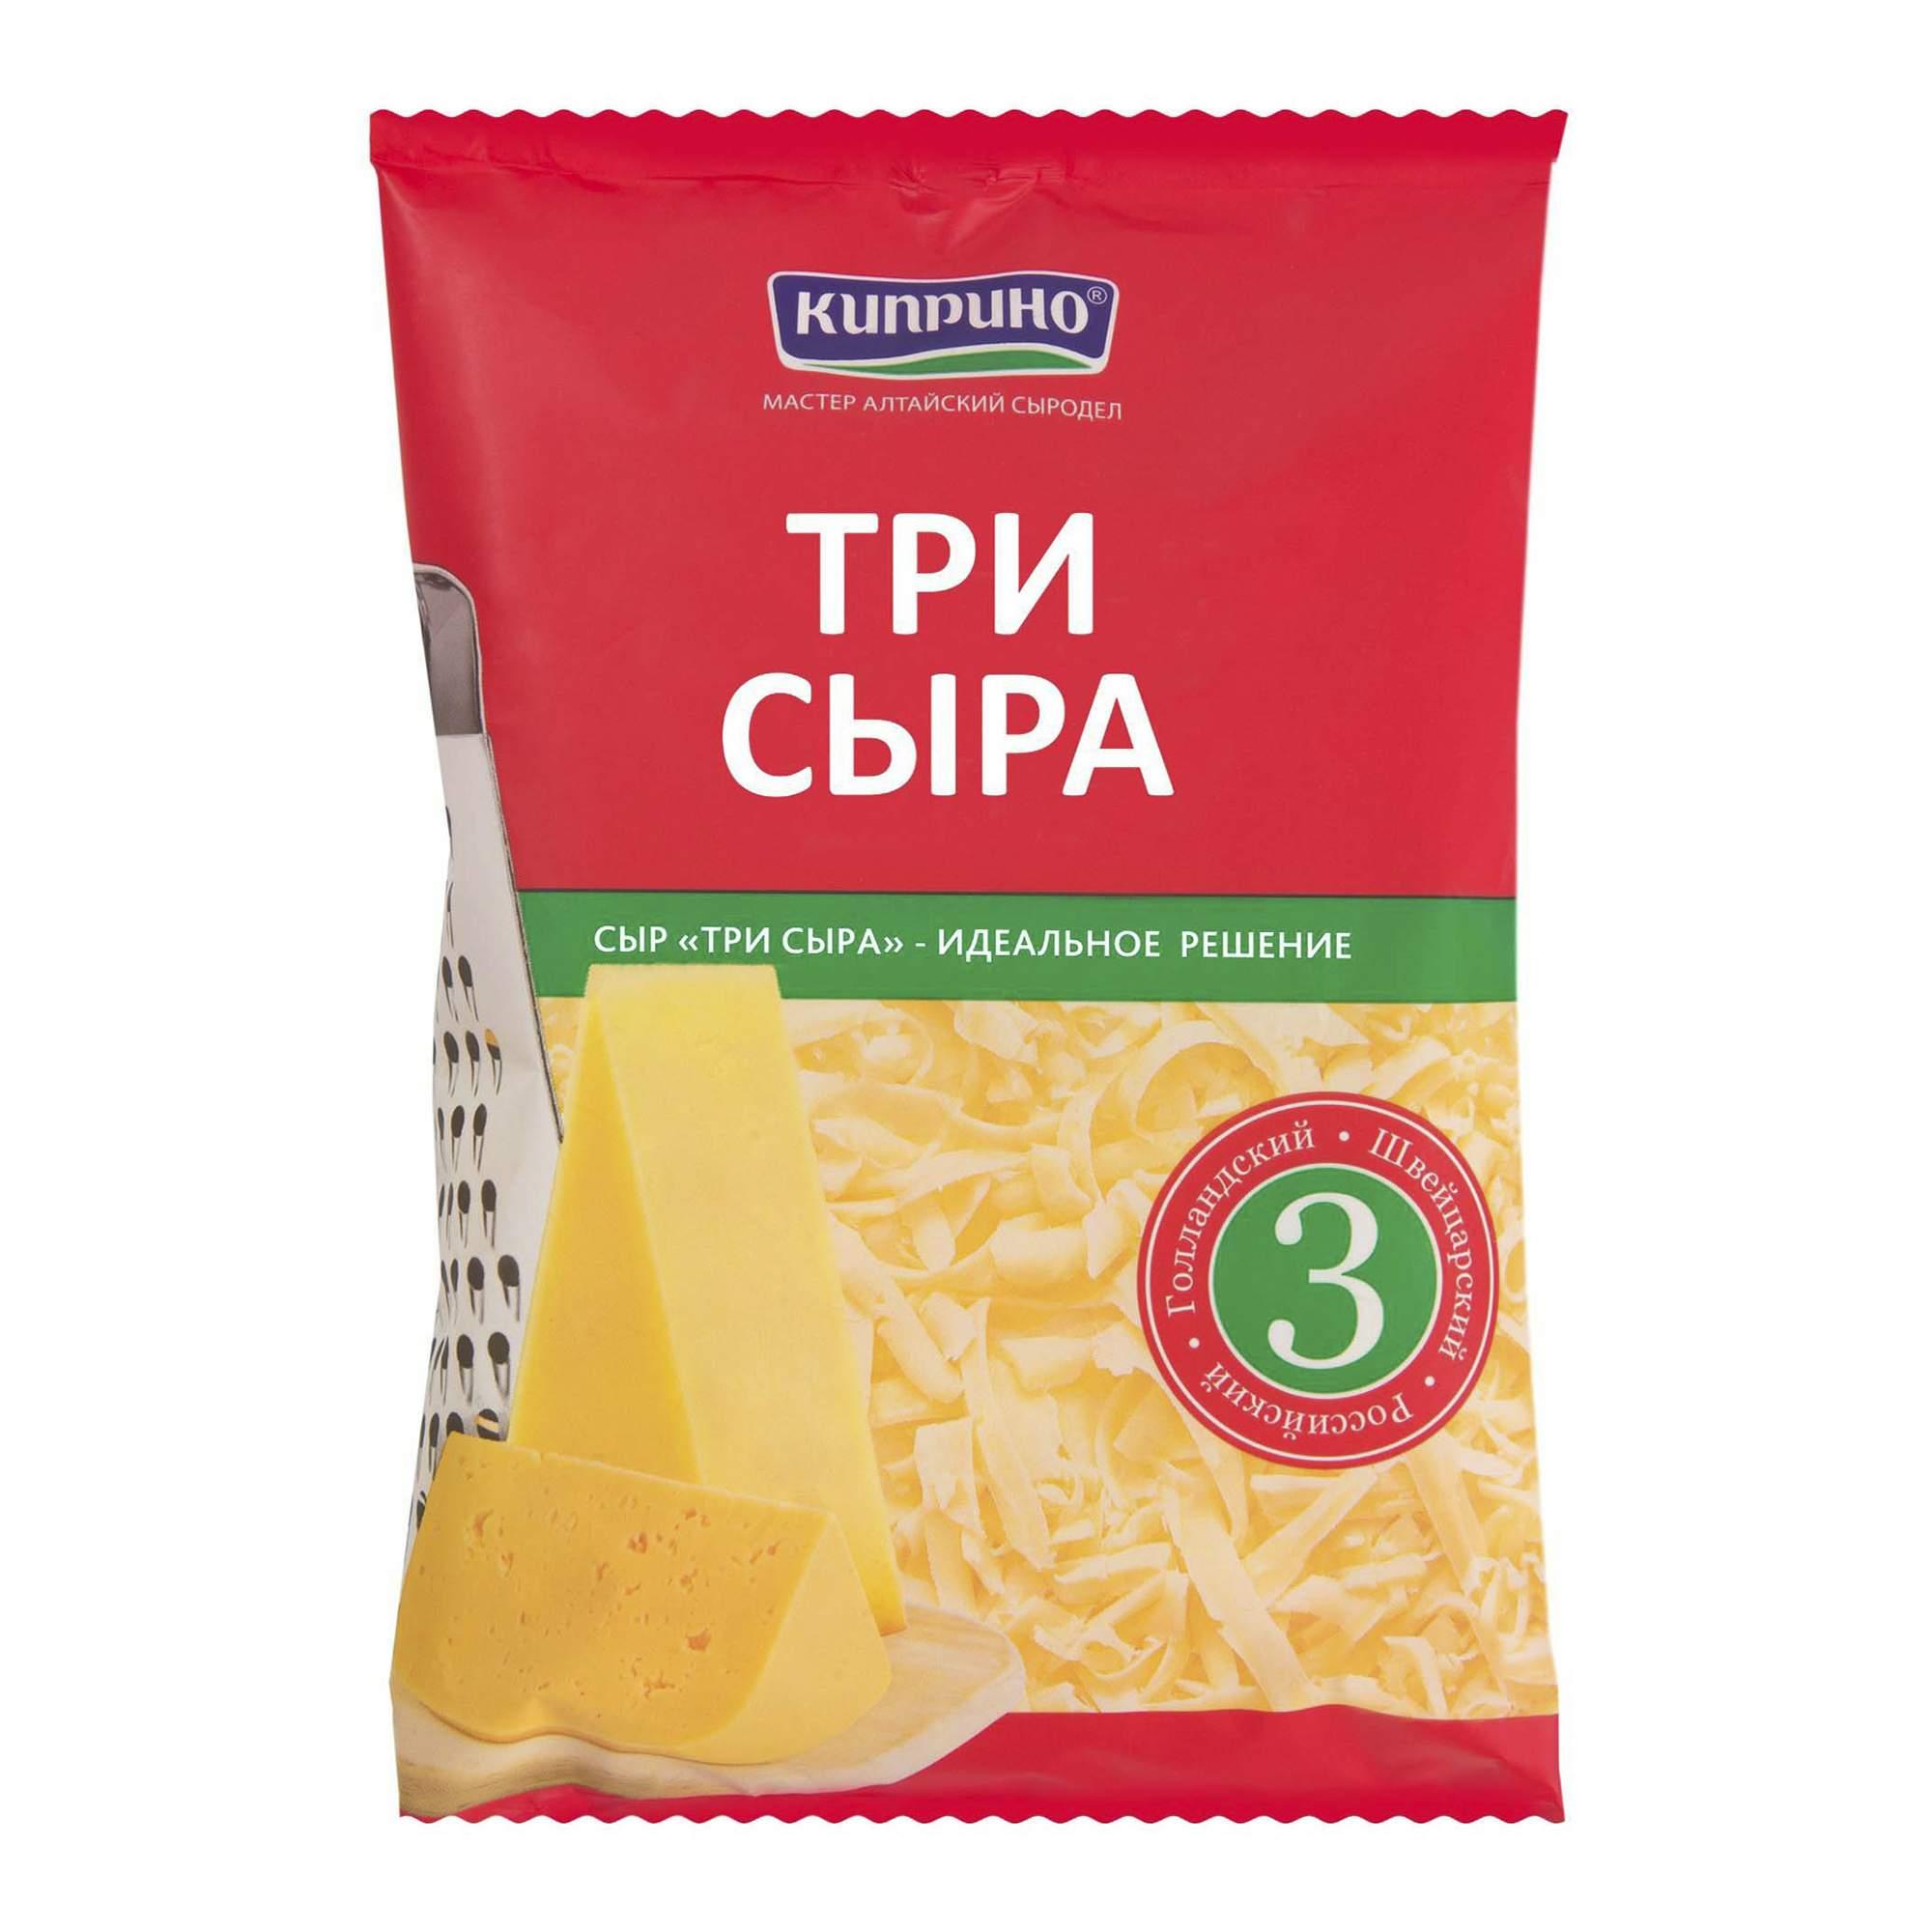 Сыр тертый Три сыра 45%  Киприно  200г - интернет-магазин Близнецы